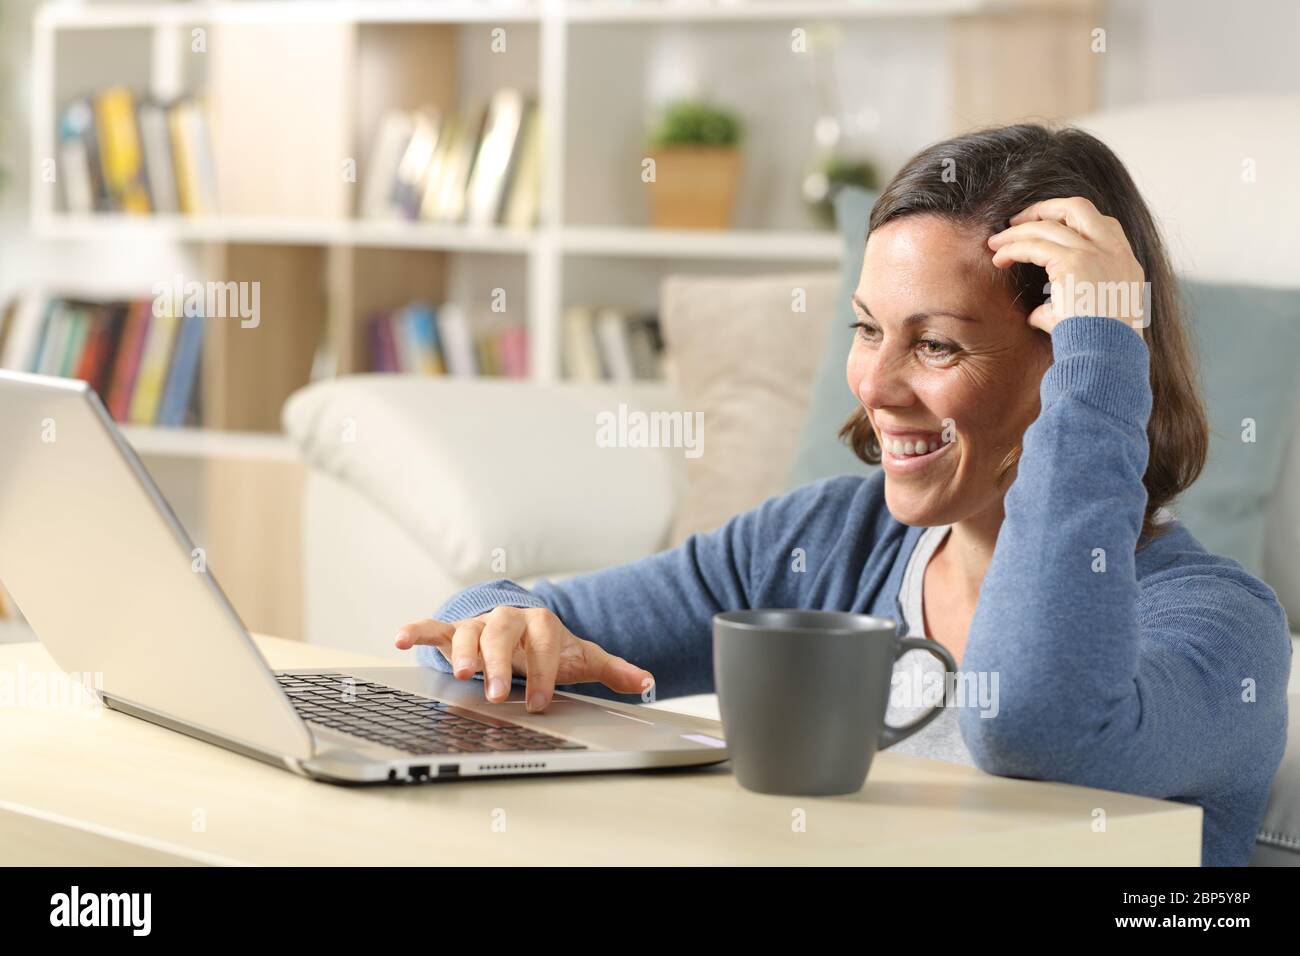 Bonne femme adulte regardant la vidéo en ligne sur un ordinateur portable assis sur le sol à la maison Banque D'Images